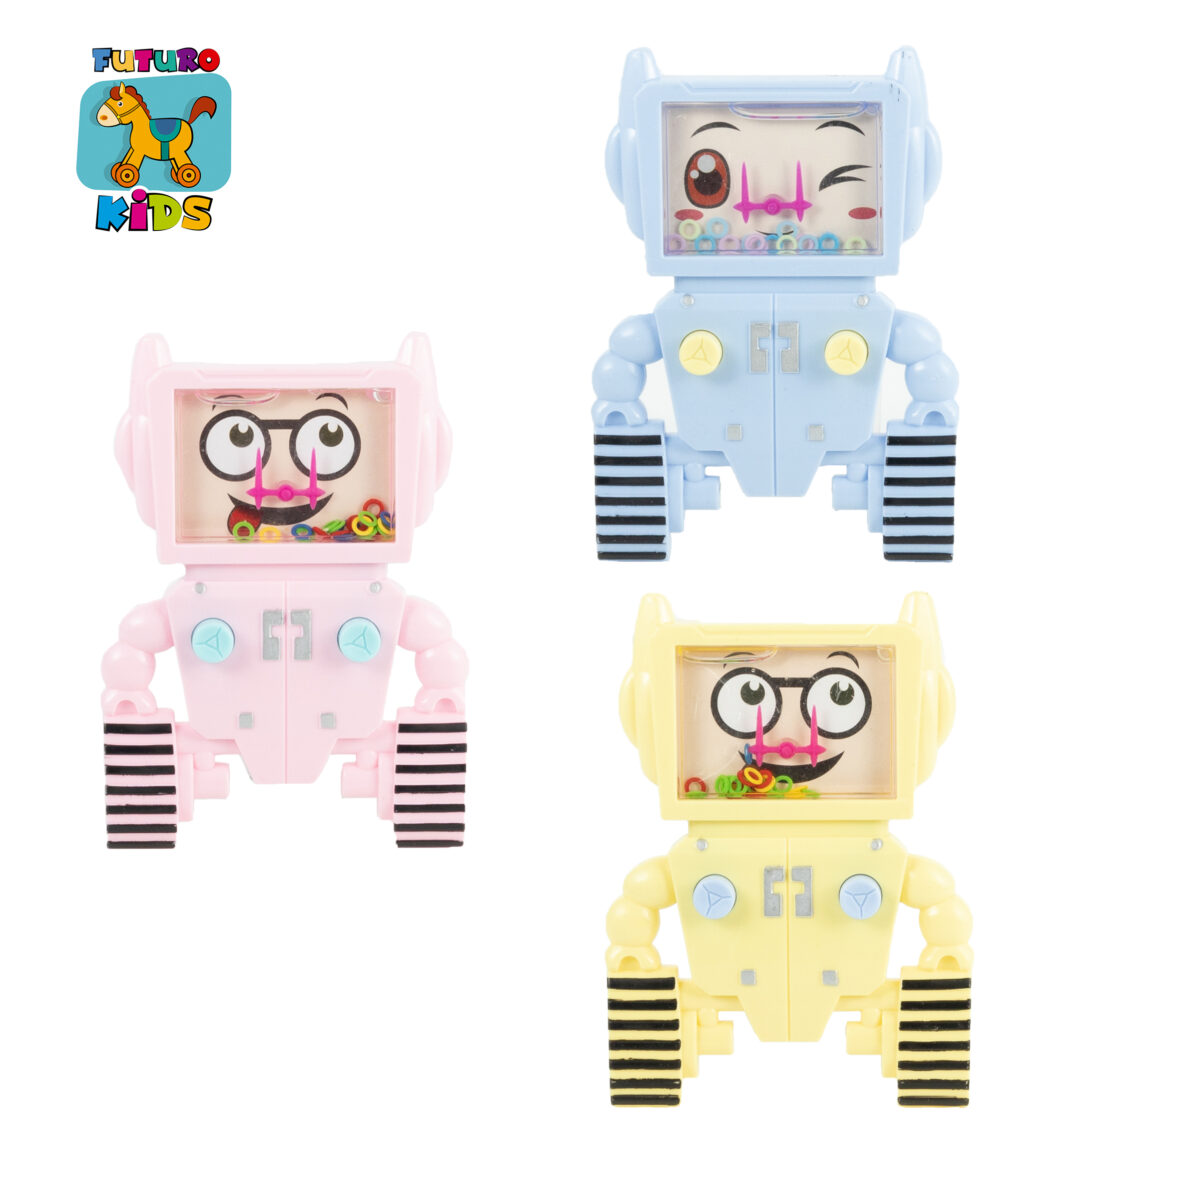 Brinquedo infantil – Jogo de argolas aquaplay mini game – Modelo Robô.